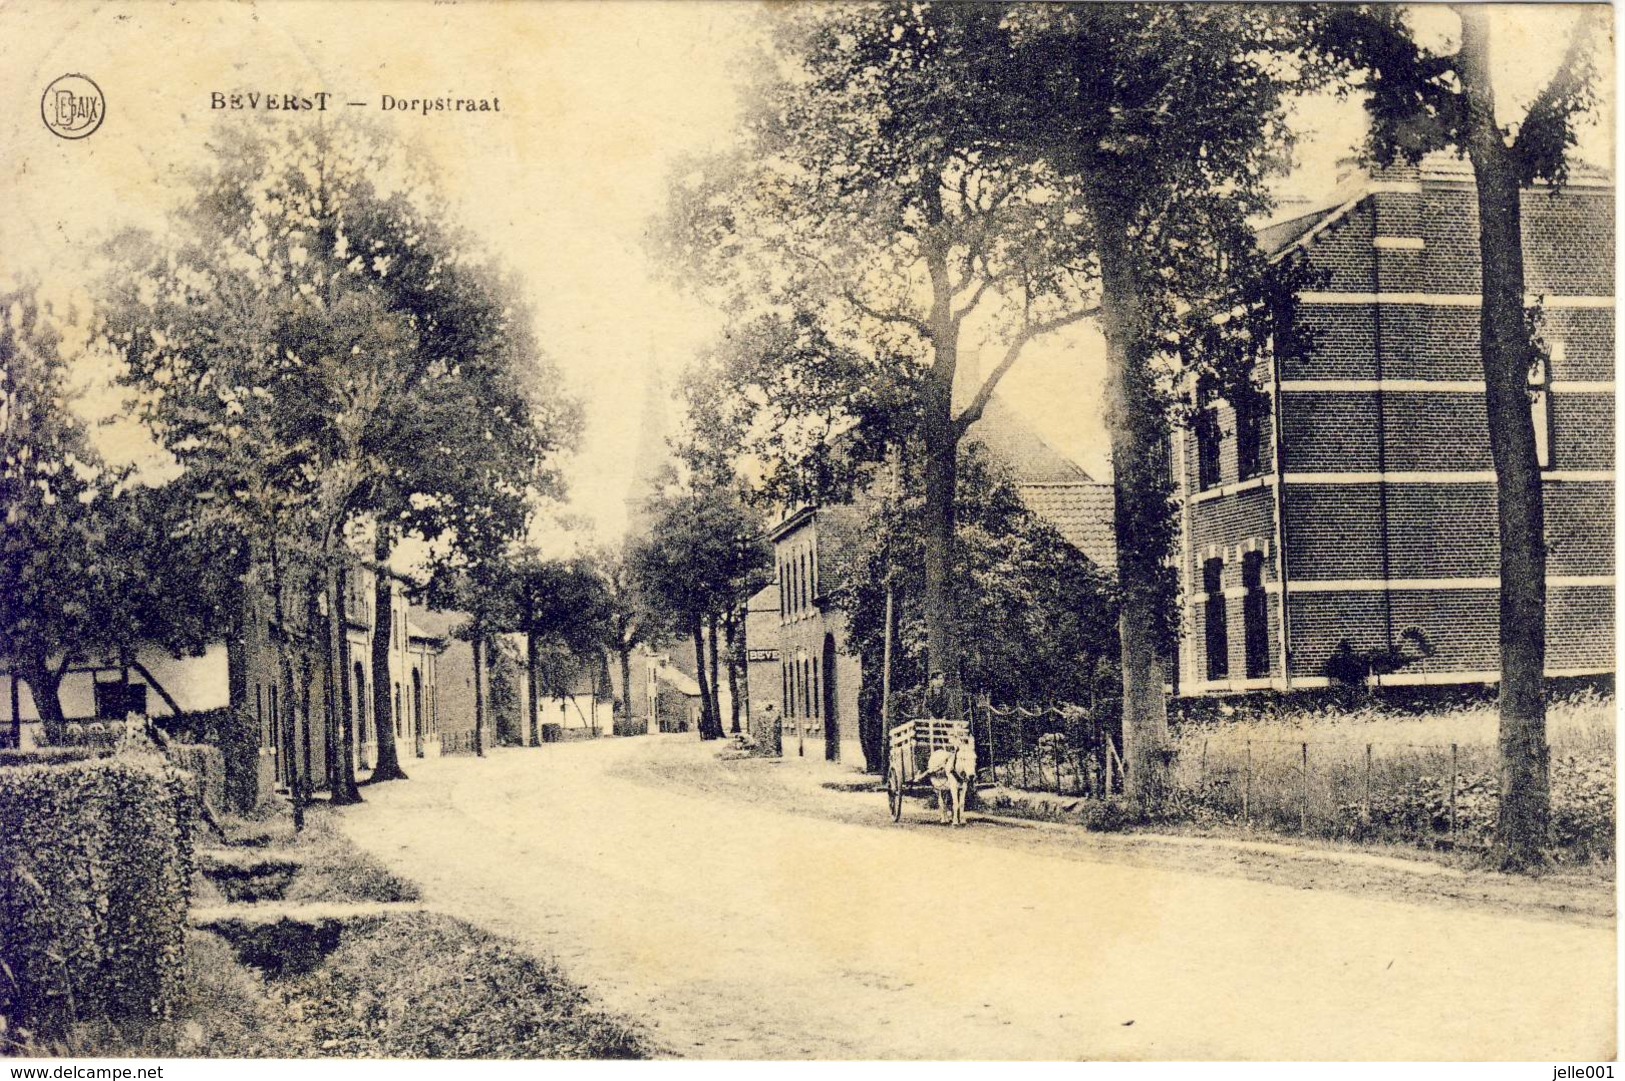 Beverst Bilzen Dorpstraat 1928 - Bilzen